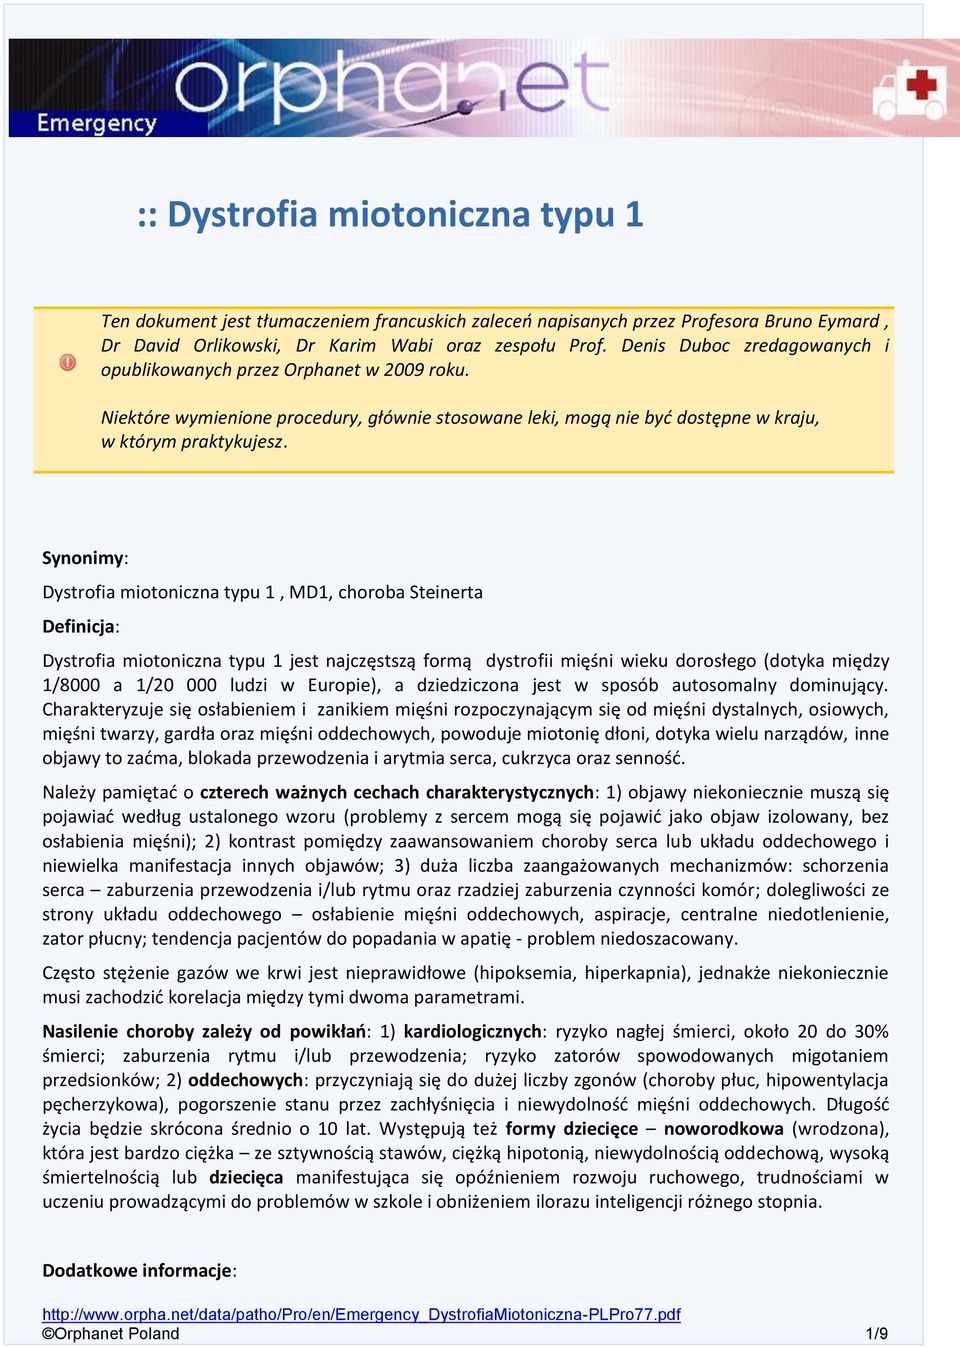 Synonimy: Dystrofia miotoniczna typu 1, MD1, choroba Steinerta Definicja: Dystrofia miotoniczna typu 1 jest najczęstszą formą dystrofii mięśni wieku dorosłego (dotyka między 1/8000 a 1/20 000 ludzi w